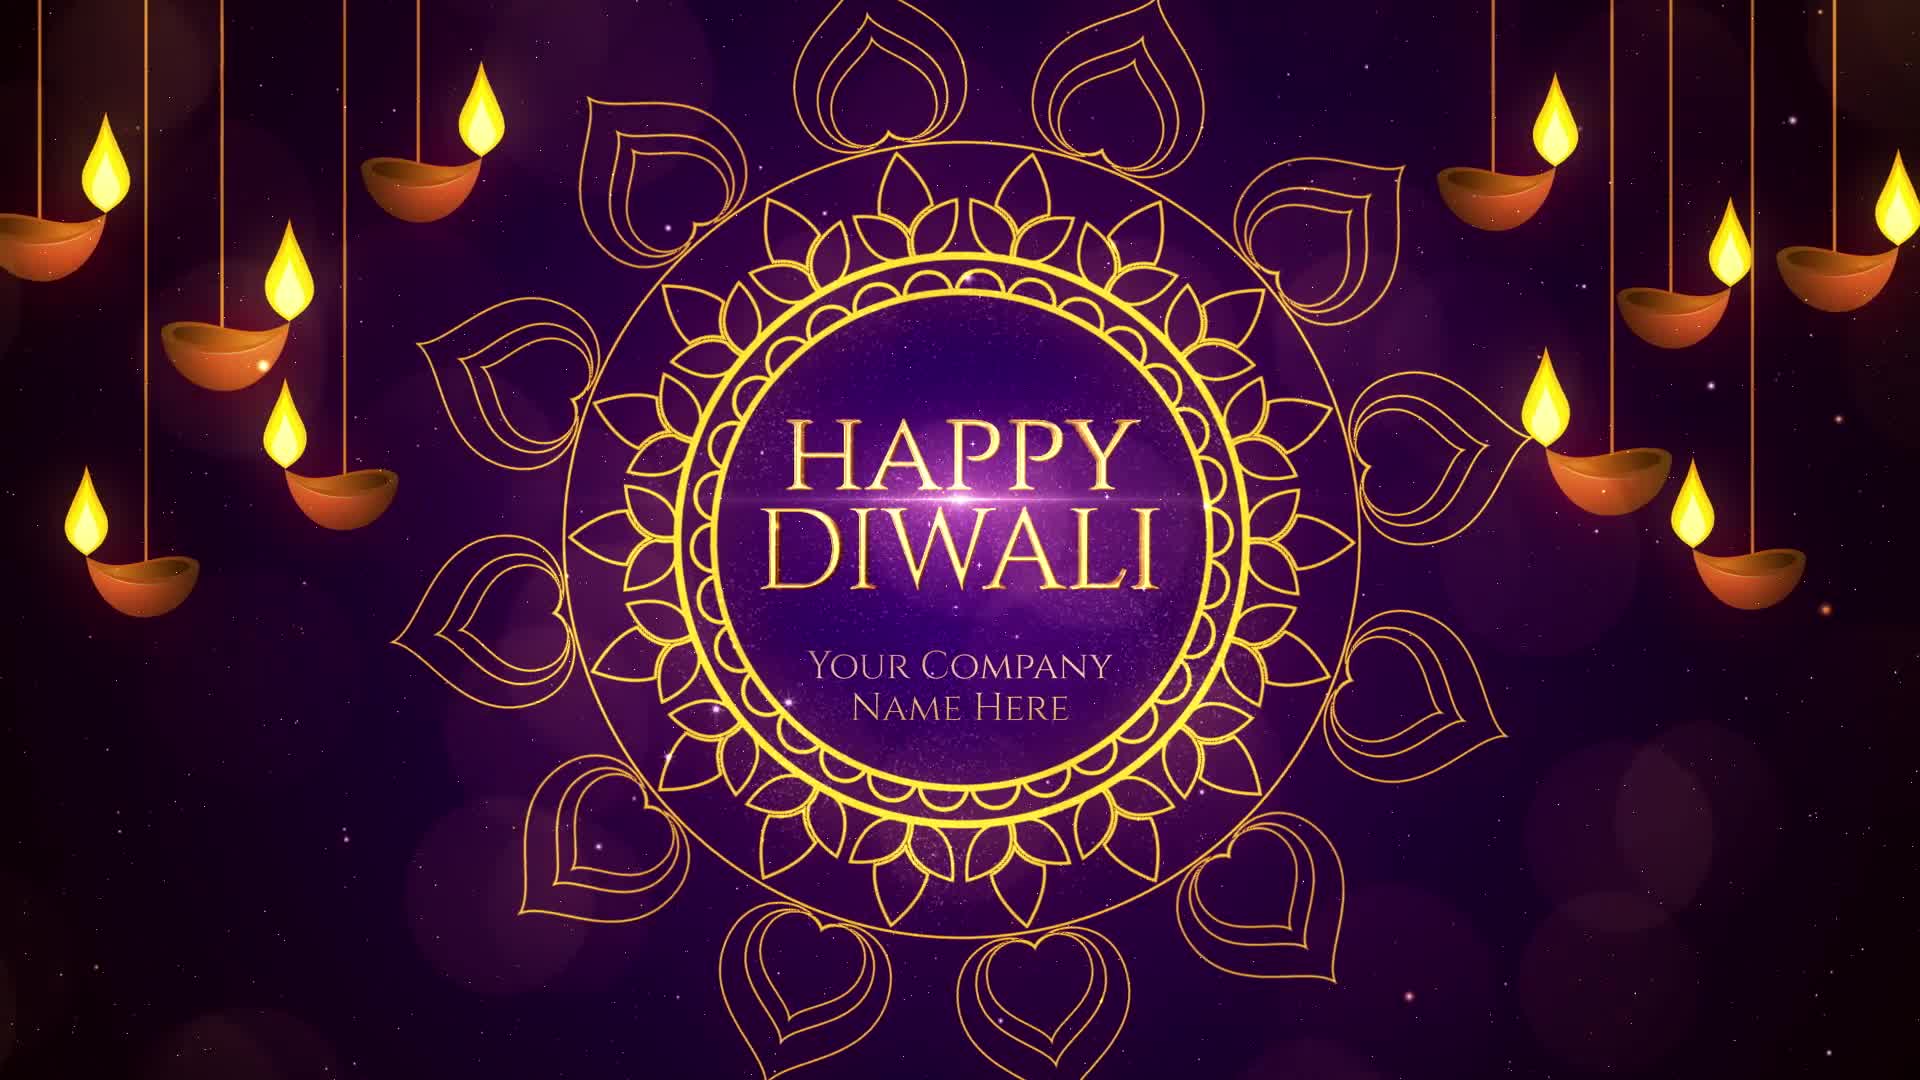 Diwali Wishes Premiere Pro Videohive 24824181 Premiere Pro Image 7